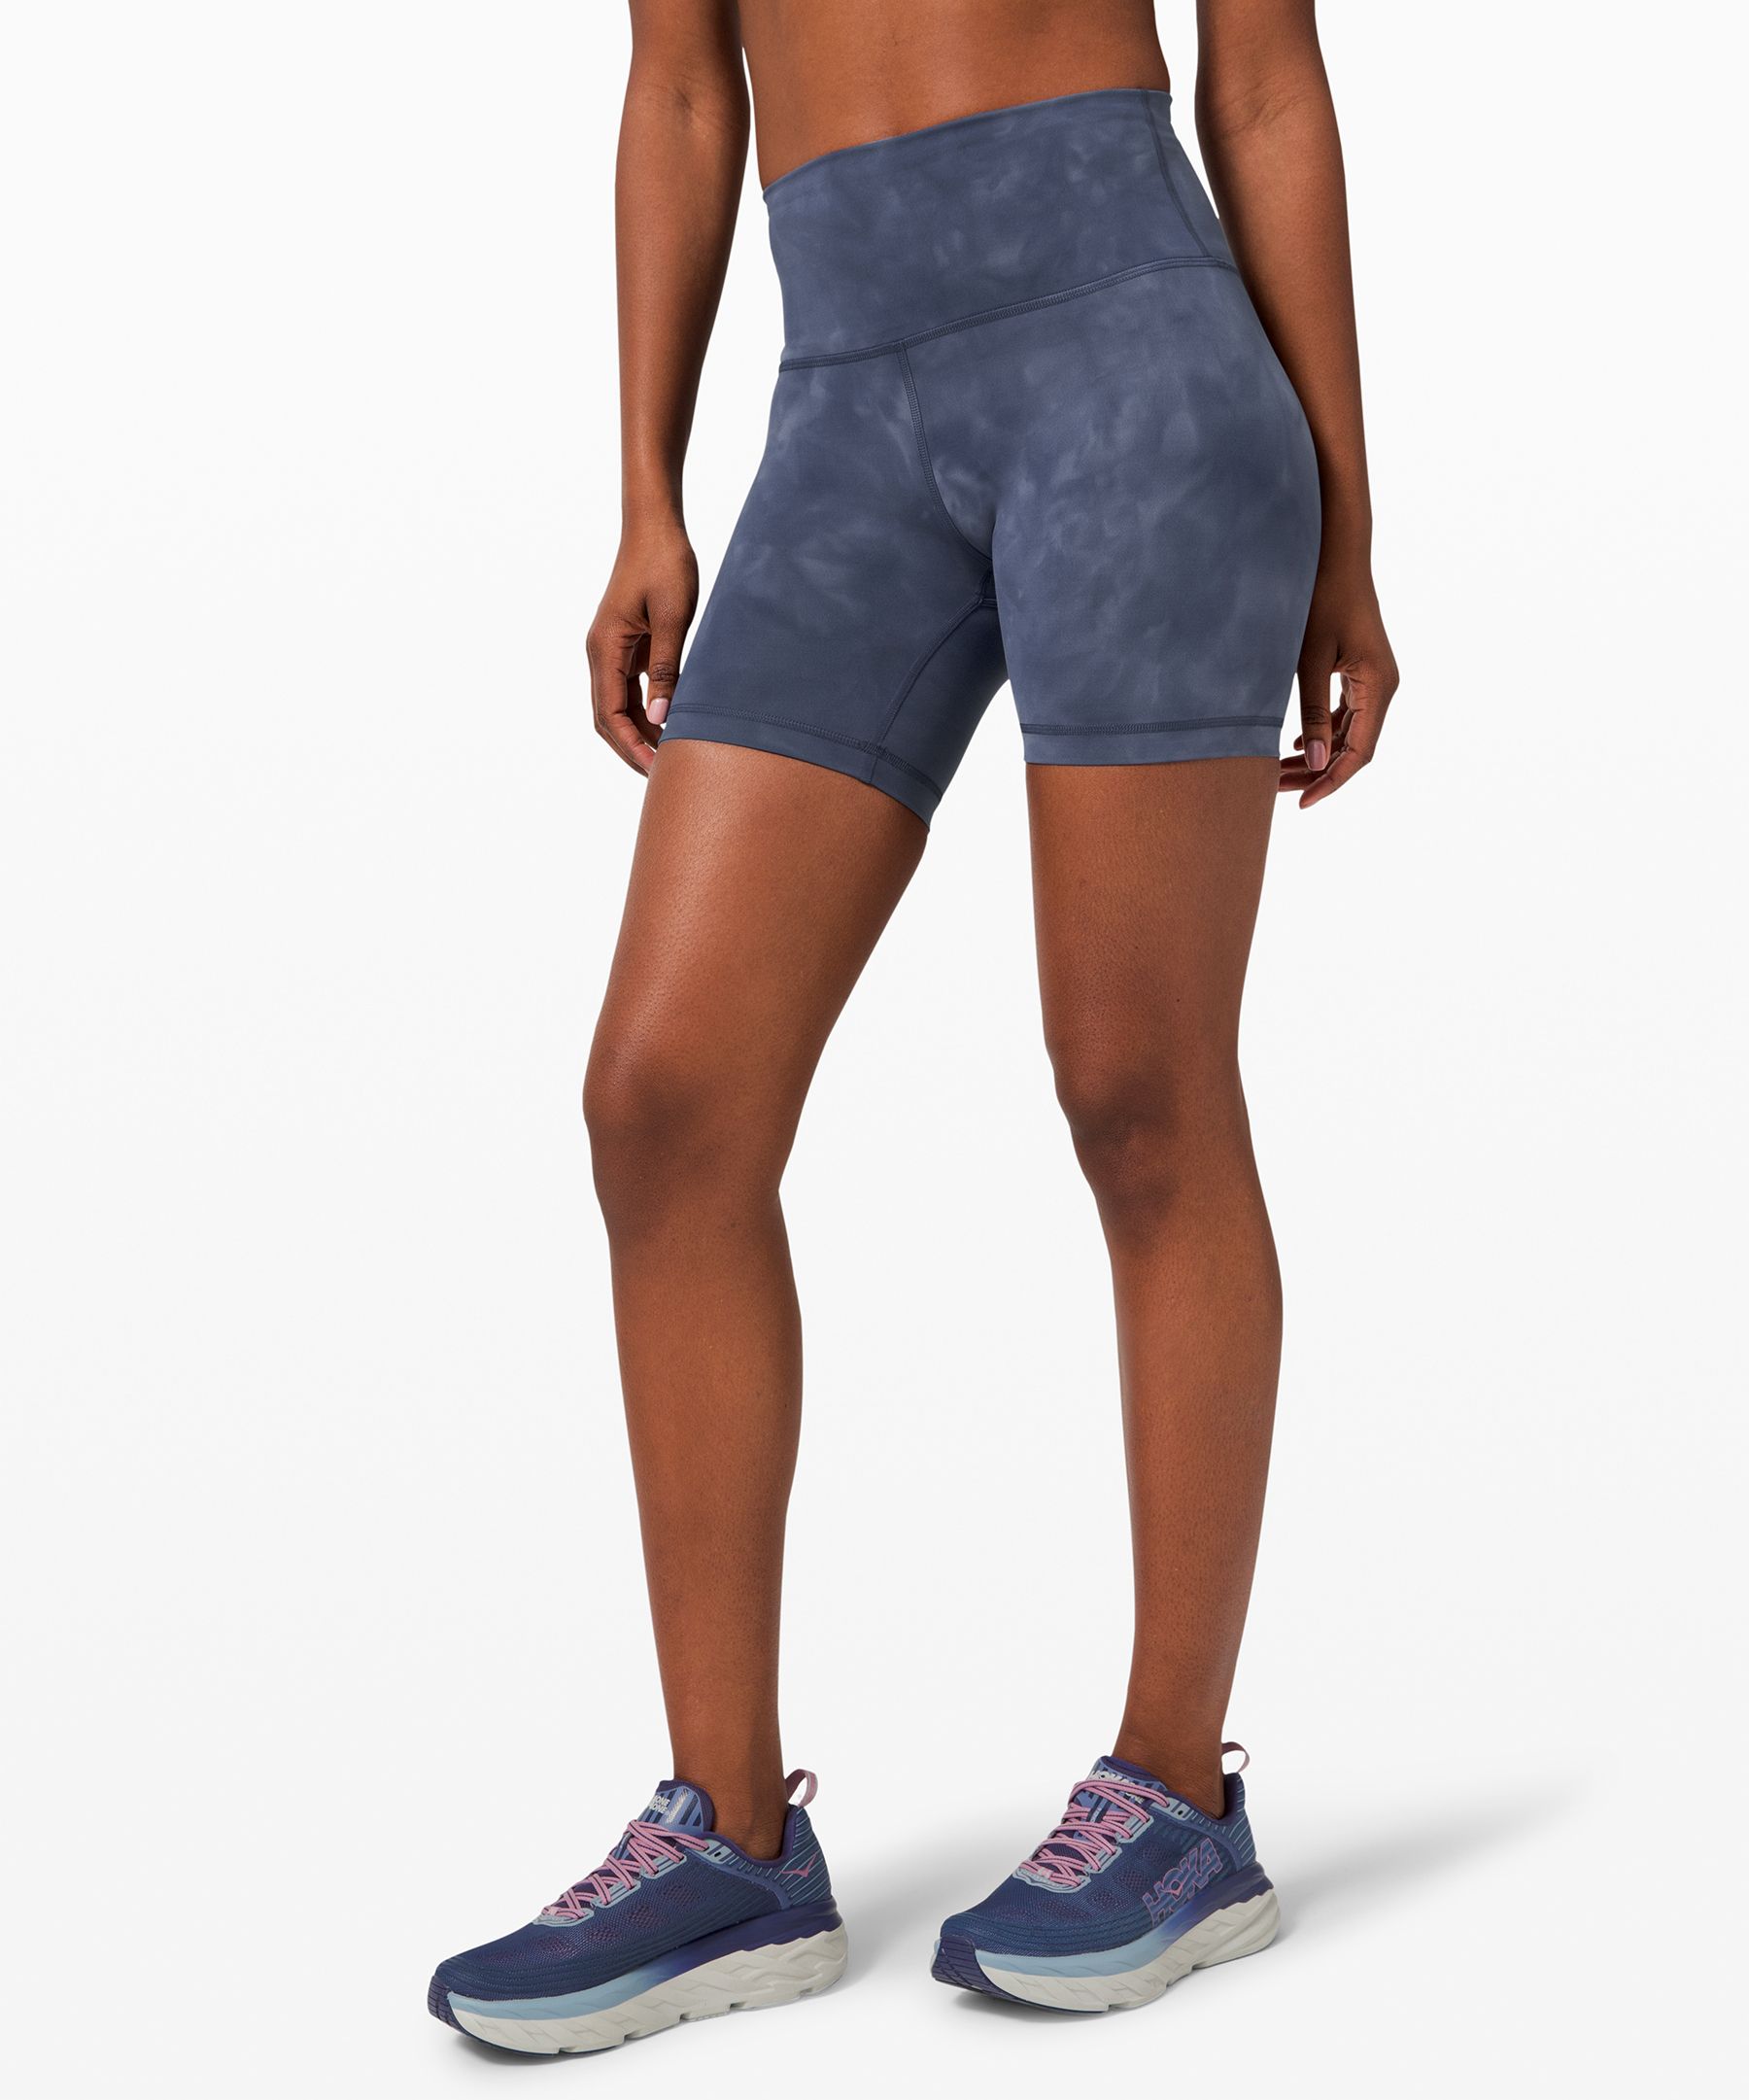 lululemon workout shorts women